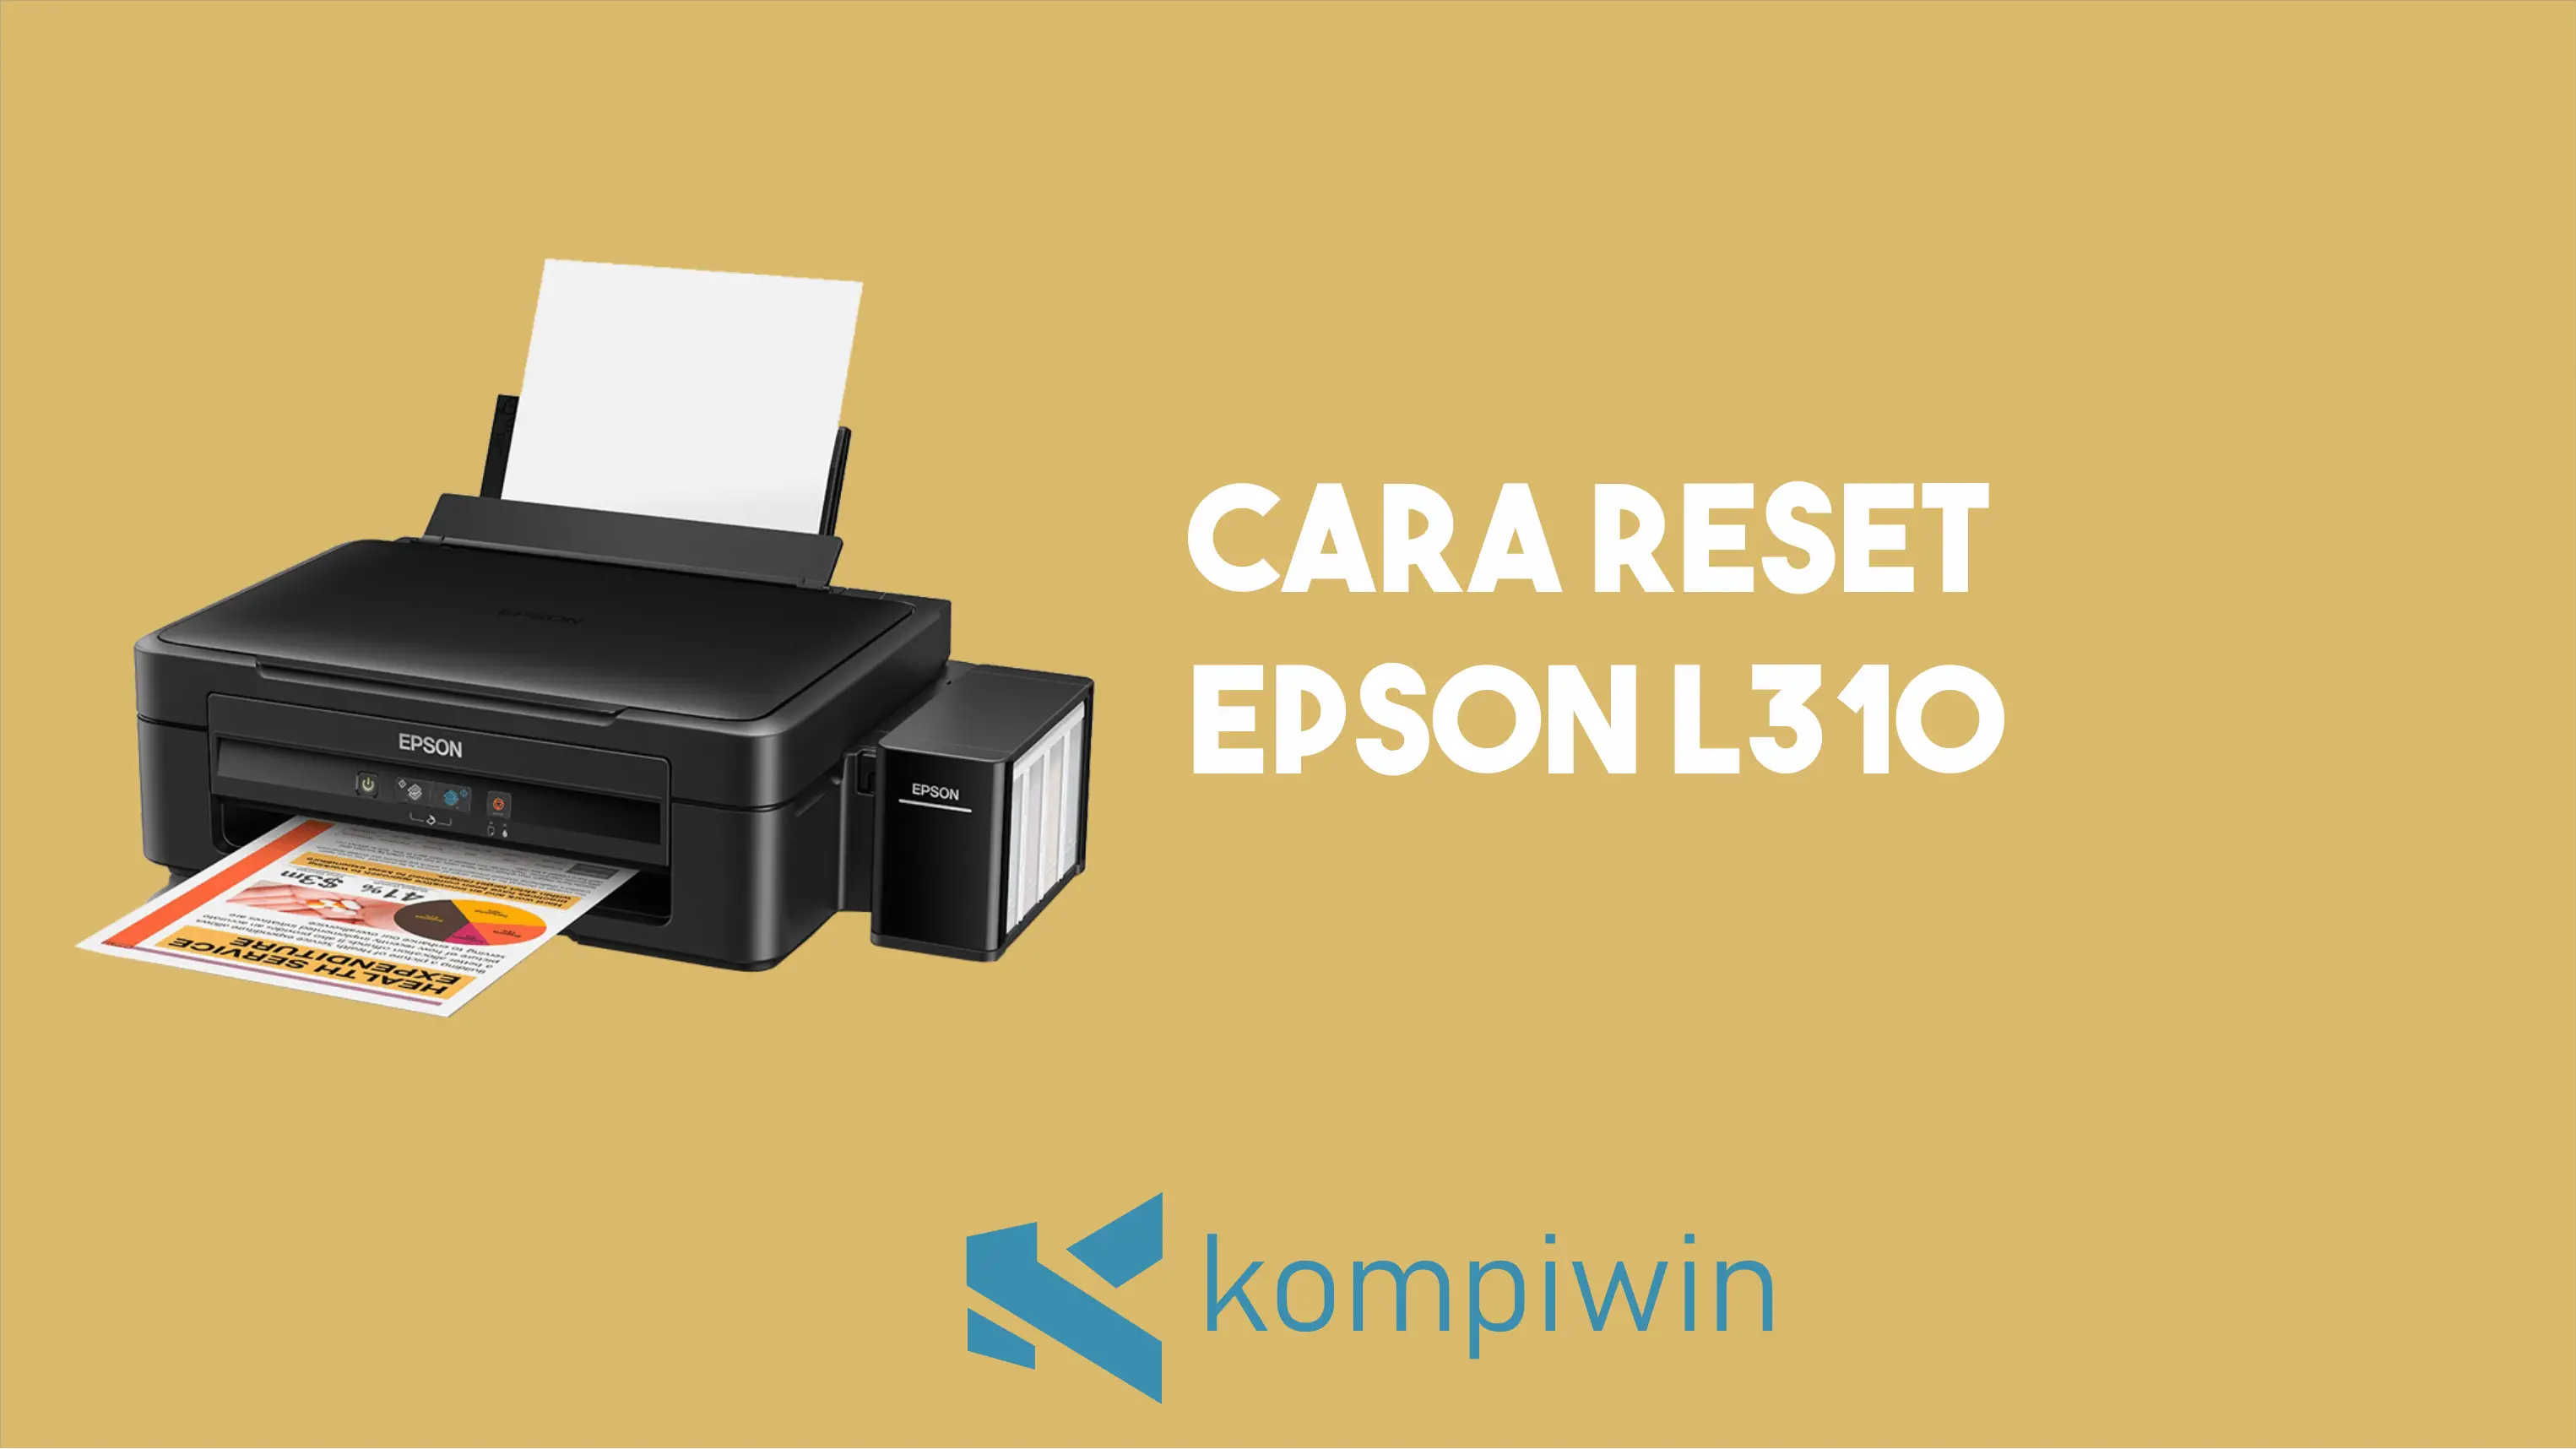 Cara Reset Epson L310